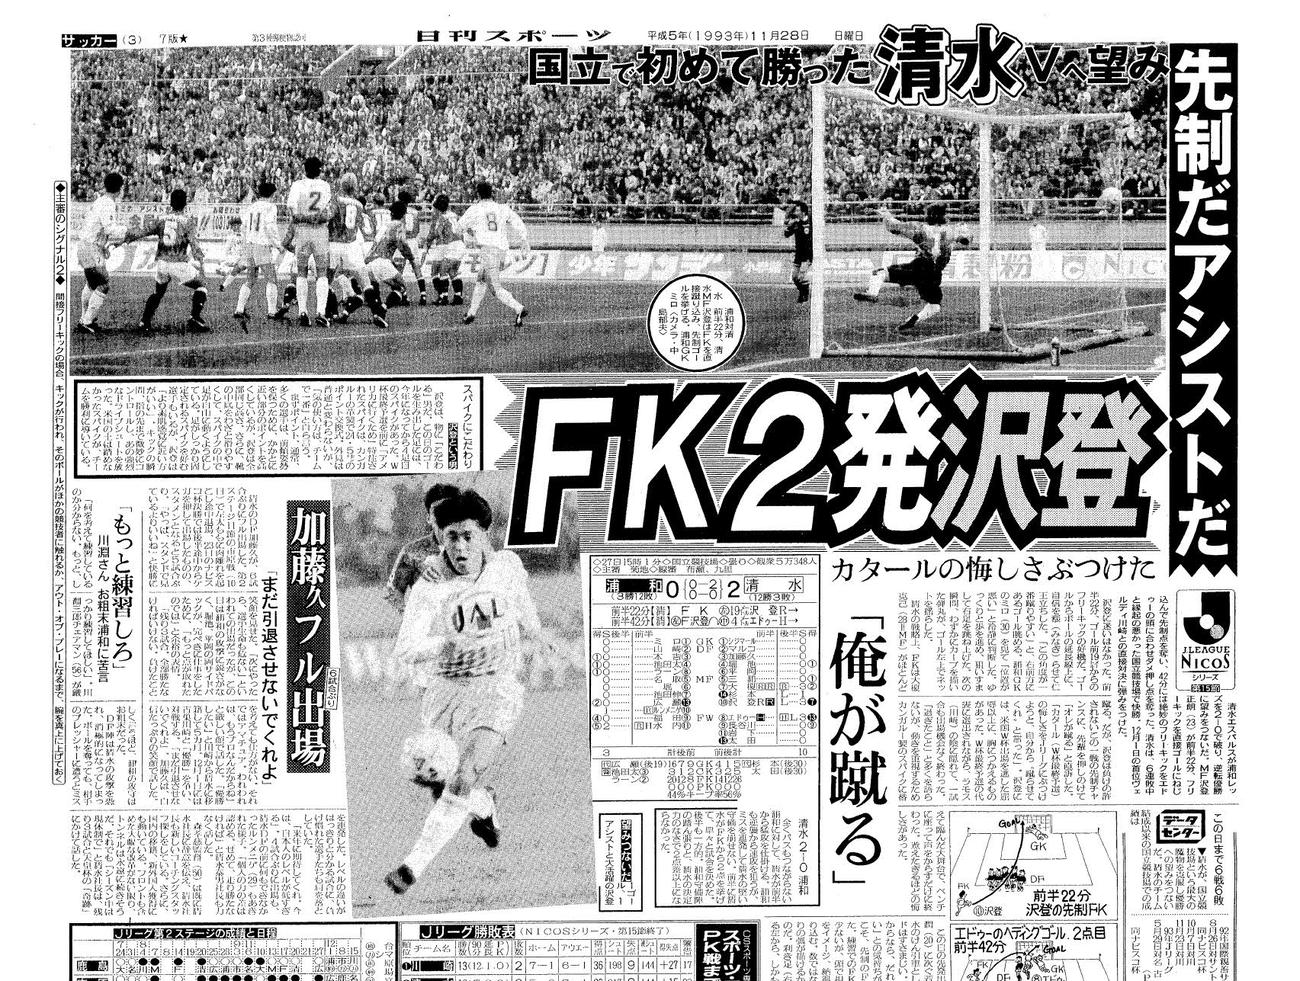 清水が国立競技場で初勝利した浦和戦（2○0）を報じる1993年11月28日付本紙3面。横長の写真は、FKで先制点を挙げた清水MF沢登